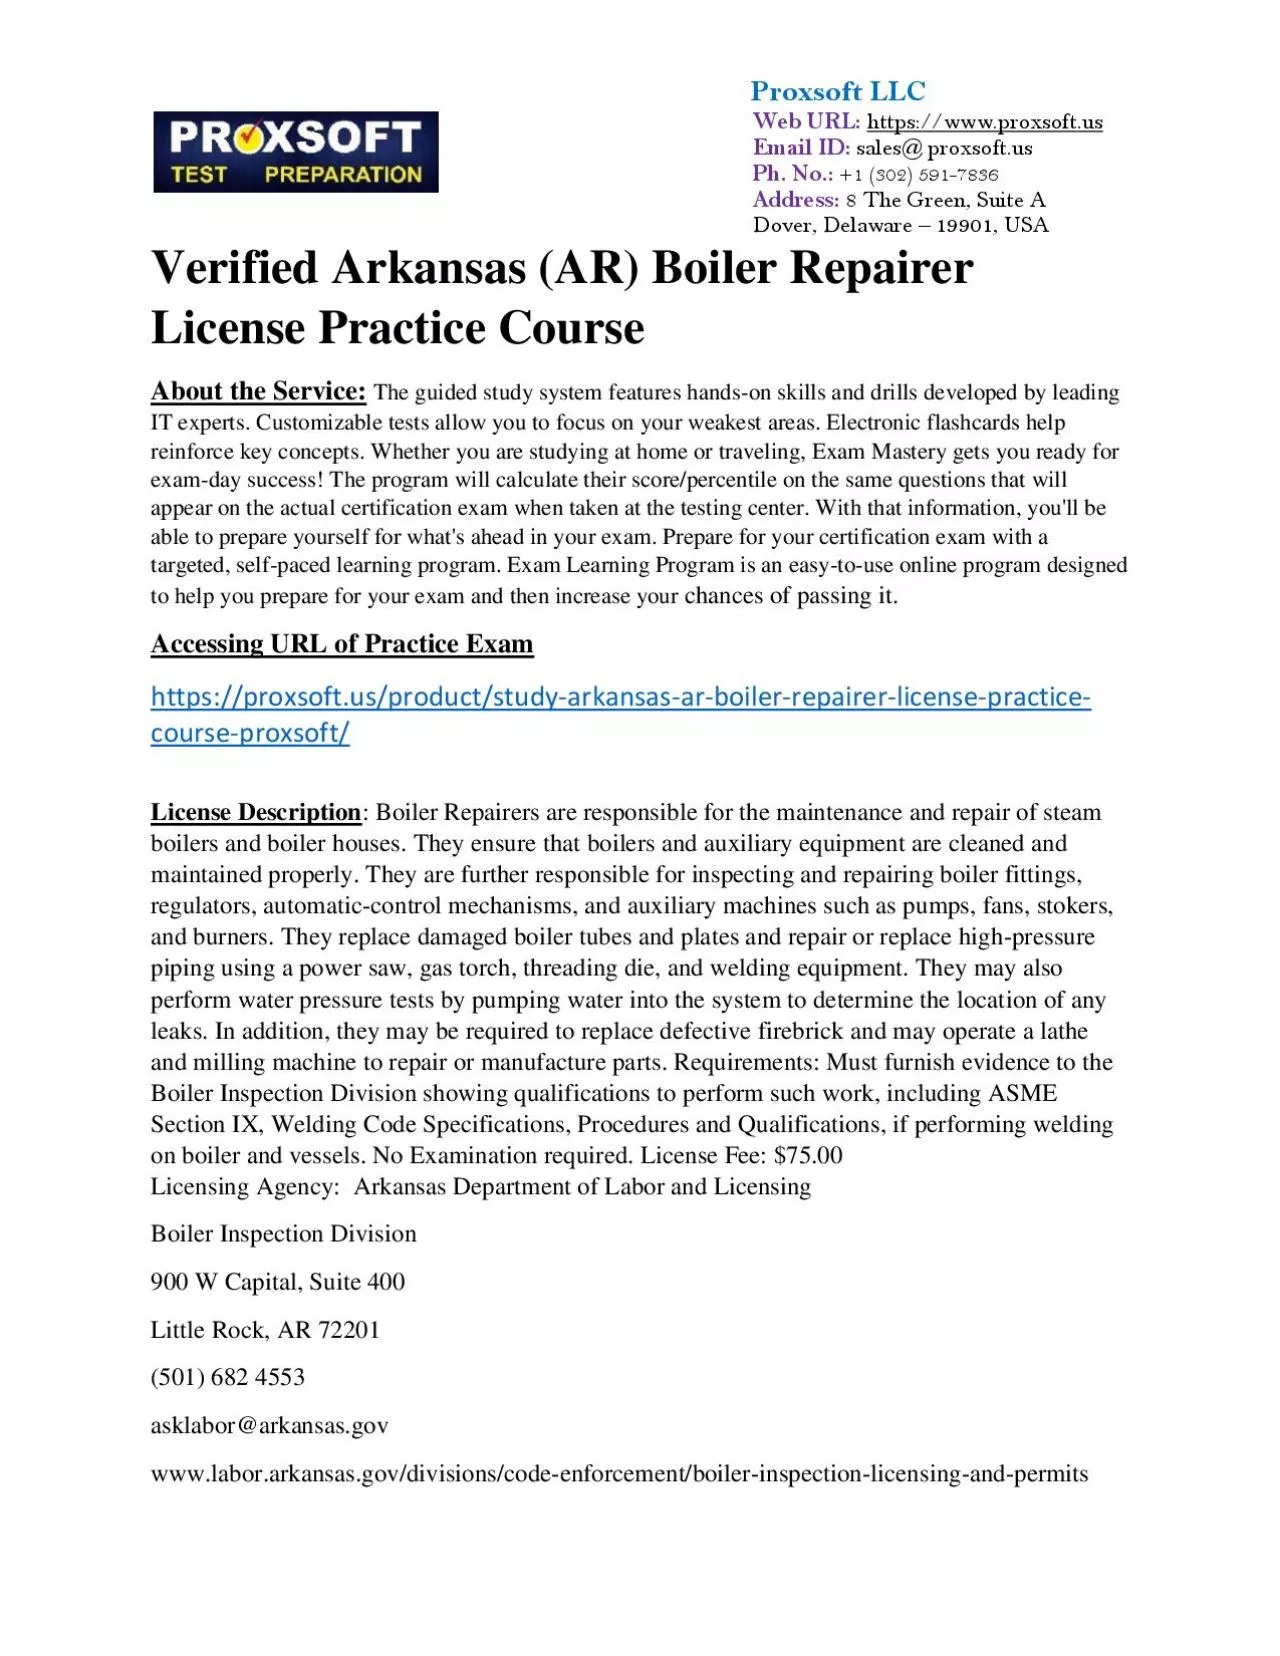 Verified Arkansas (AR) Boiler Repairer License Practice CourseVerified Arkansas (AR) Boiler